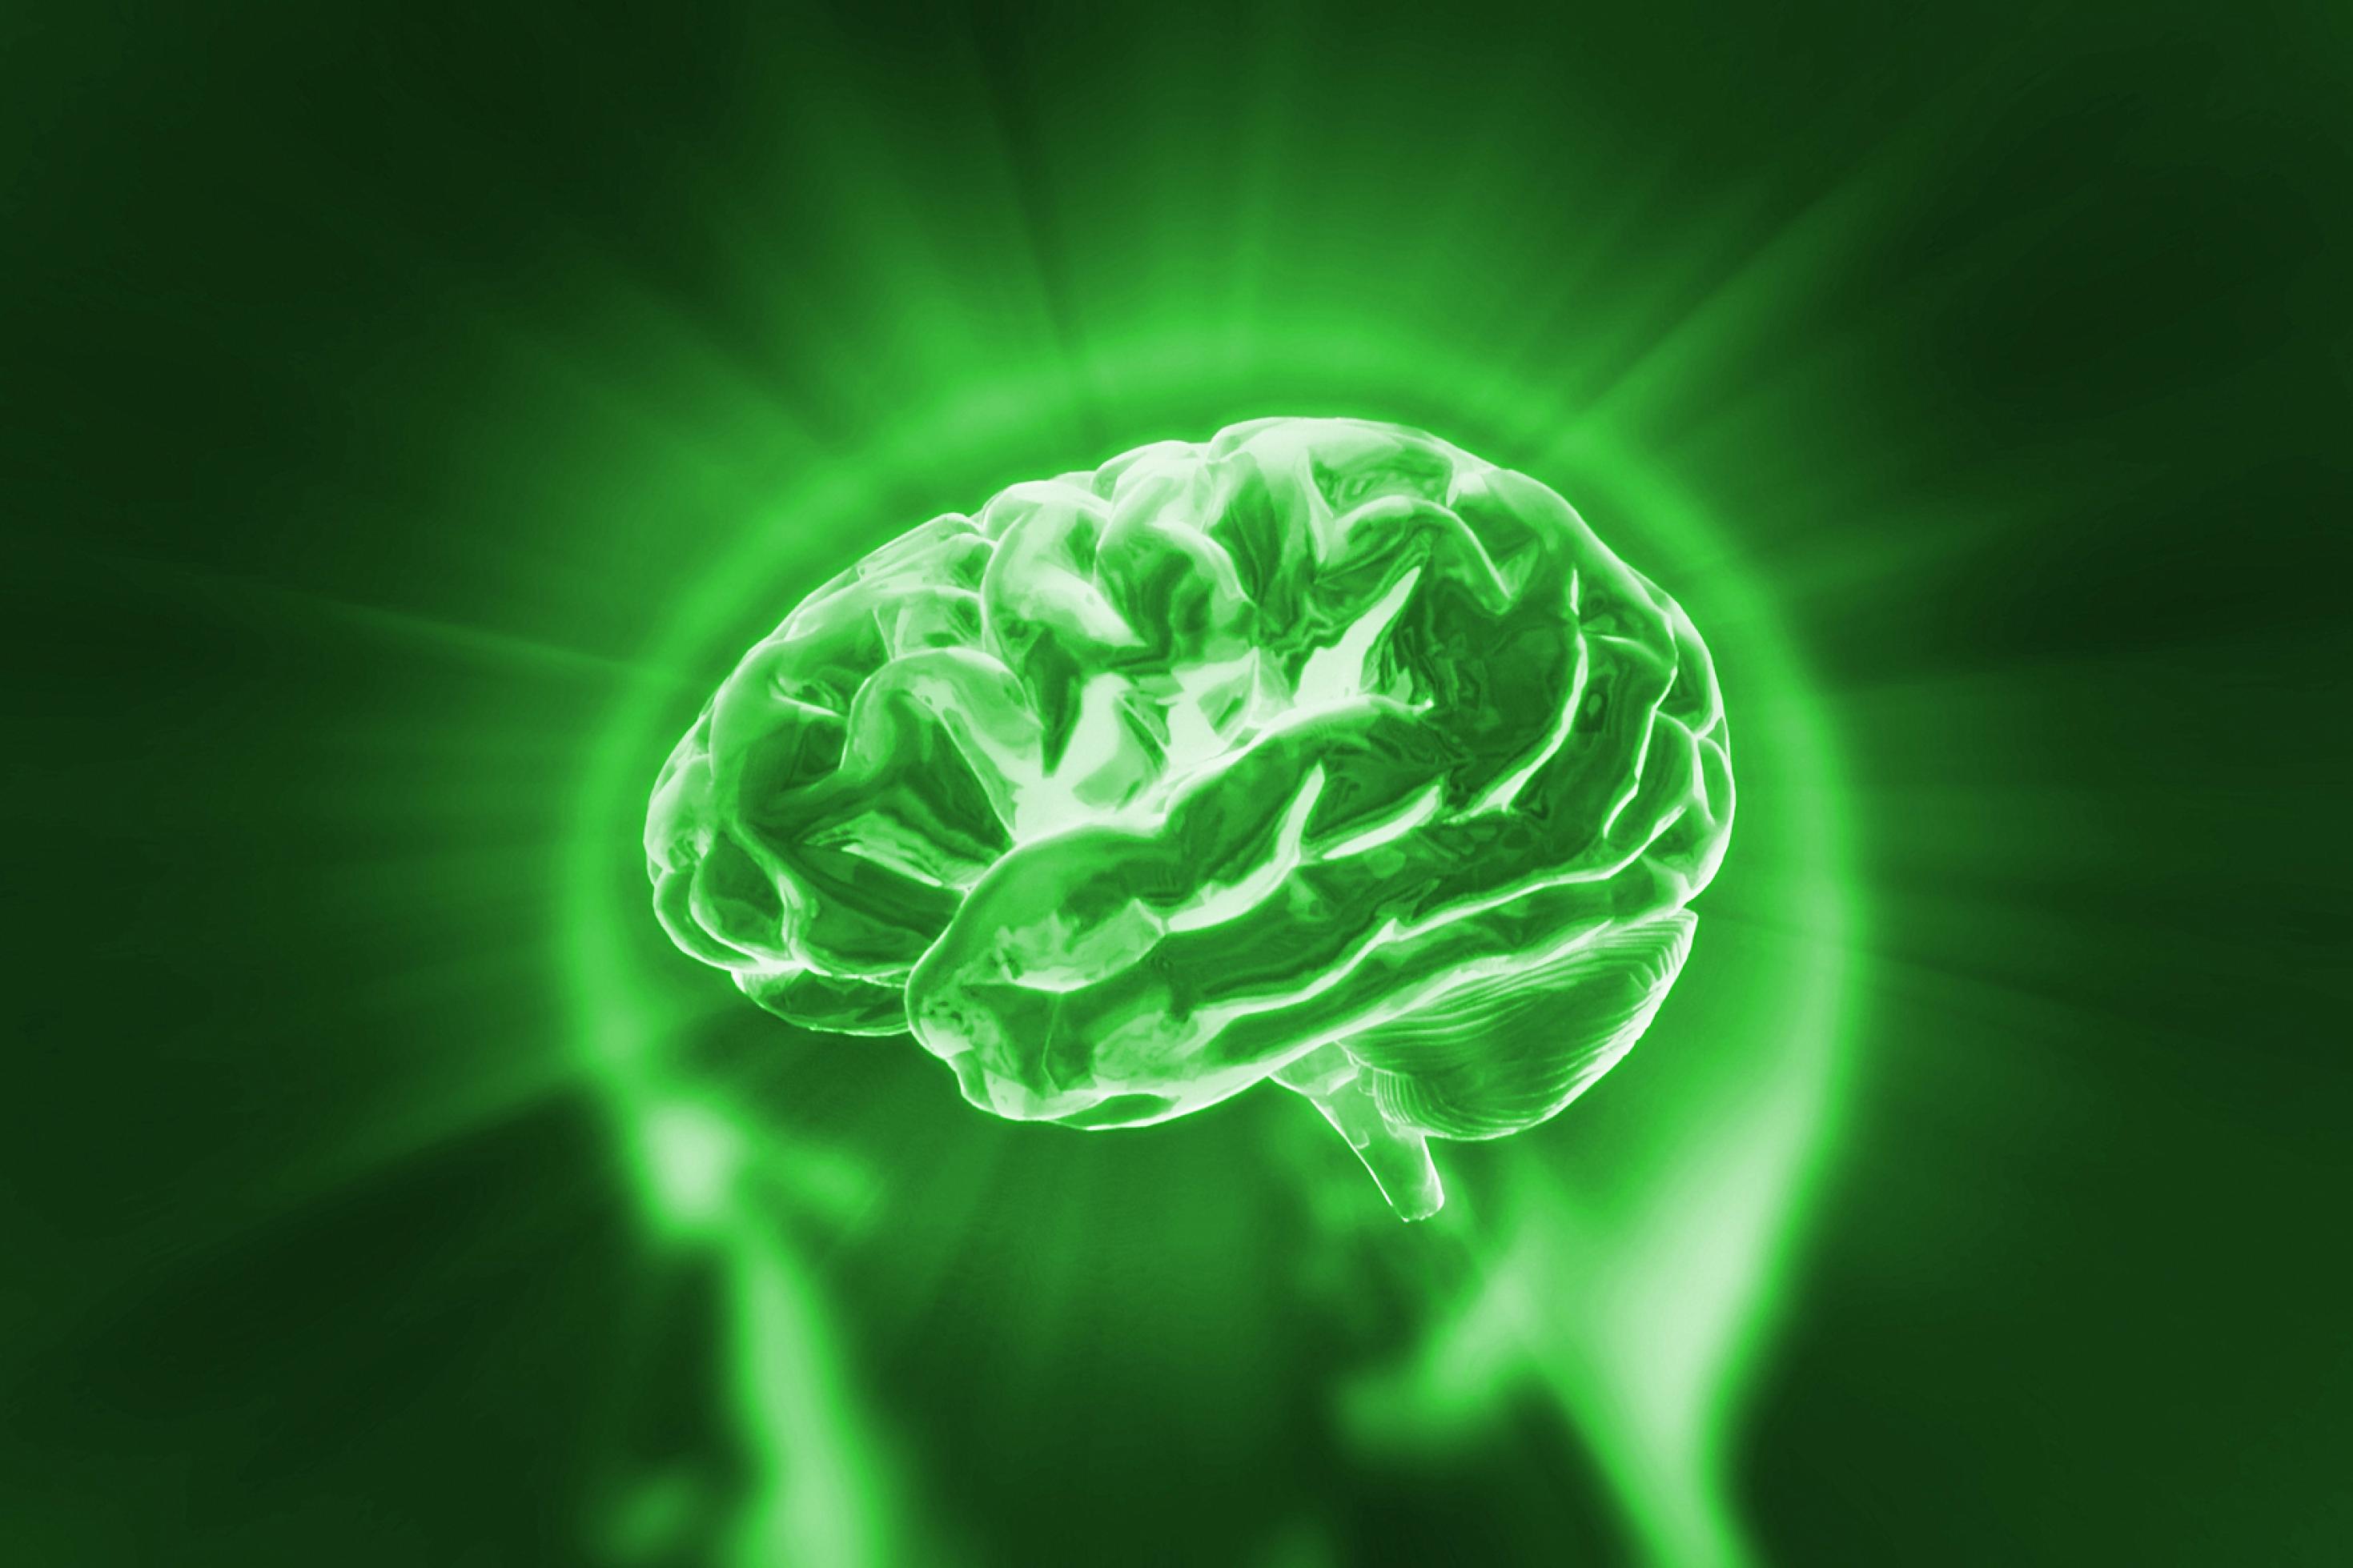 Künstlerisches Bild eines grünen Gehirns als Symbol für grüne, also energieeffiziente KI.